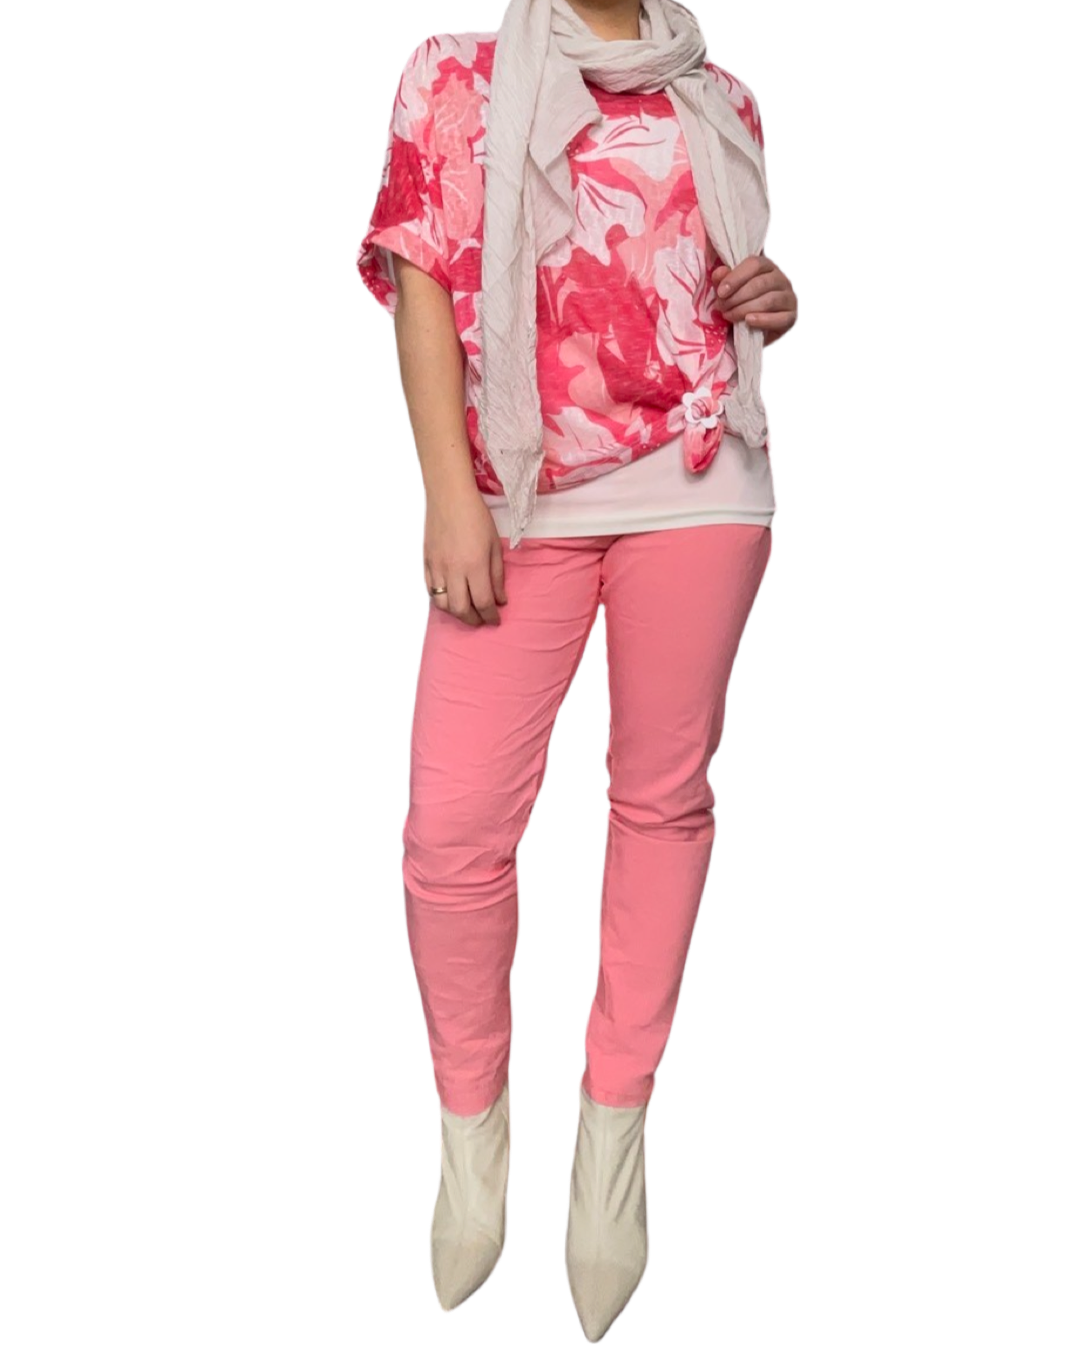 T-shirt femme imprimé de fleurs corail et rose avec foulard, camisole gainante, boucle d'ajustement, pantalons corail et bottes blanches